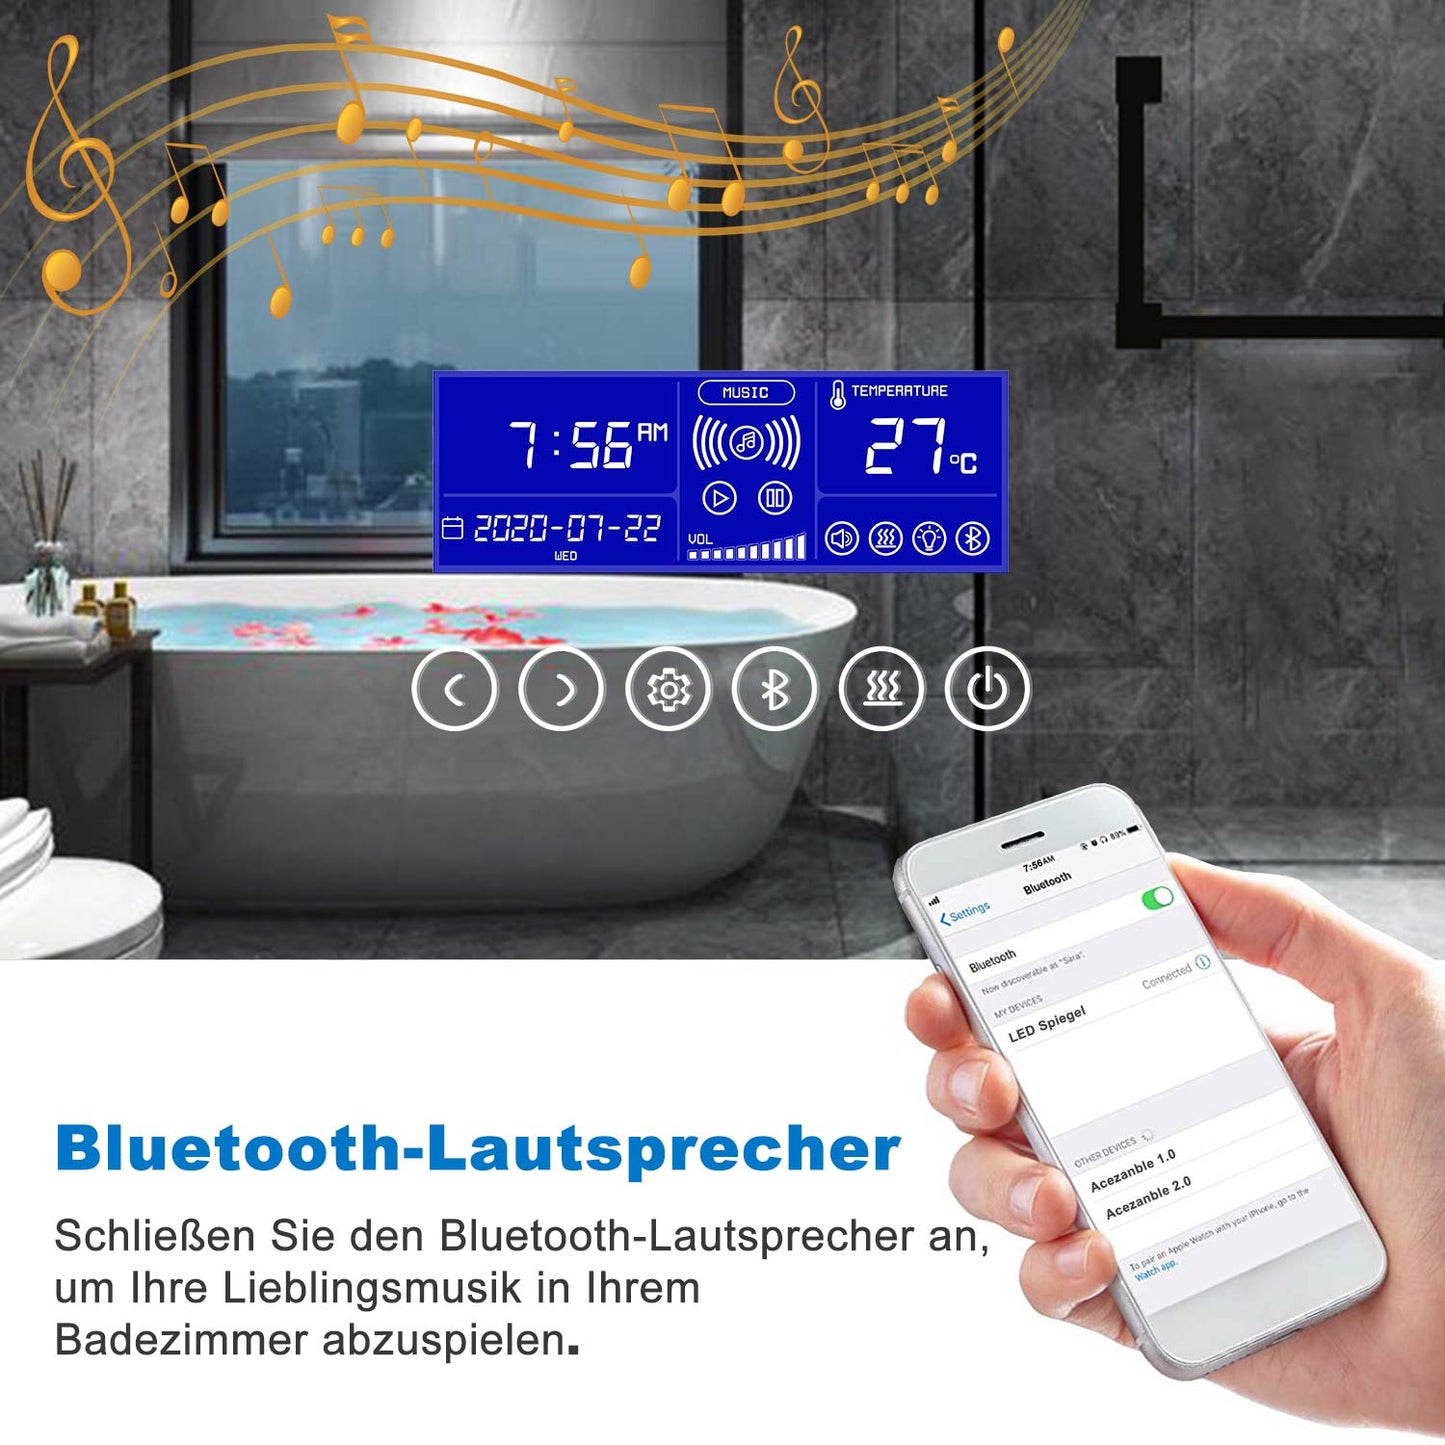 LED Badspiegel 80 bis 160 cm 2 Lichtfarbe 2700k/6000K Wandspiegel mit Bluetooth, Uhr, Touch, Beschlagfrei,3-Fach Vergrößerung Schminkspiegel IP44 Kalt/Warmweiß energiesparend